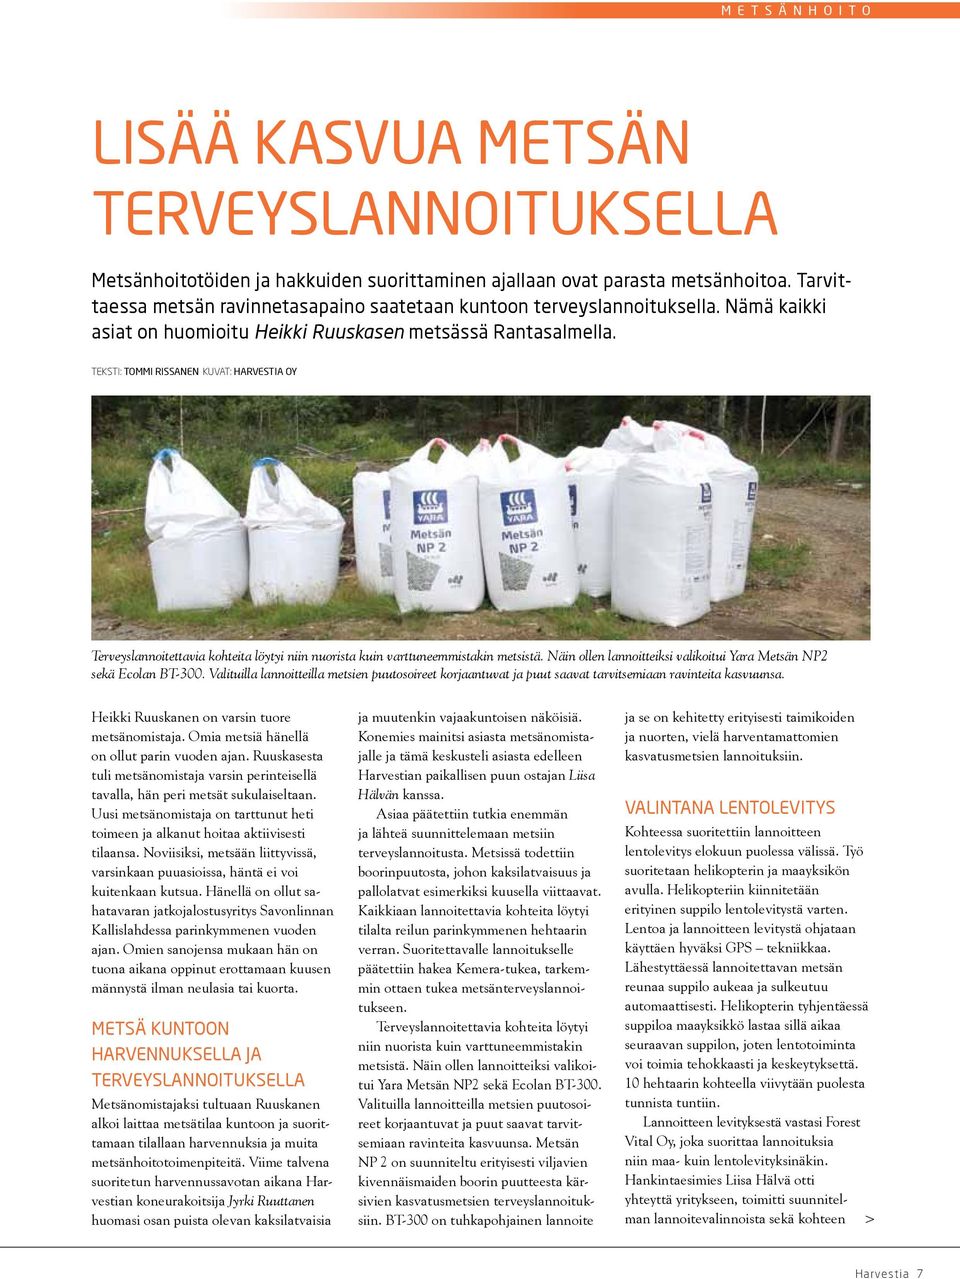 Teksti: Tommi Rissanen Kuvat: Harvestia Oy Terveyslannoitettavia kohteita löytyi niin nuorista kuin varttuneemmistakin metsistä. Näin ollen lannoitteiksi valikoitui Yara Metsän NP2 sekä Ecolan BT-300.